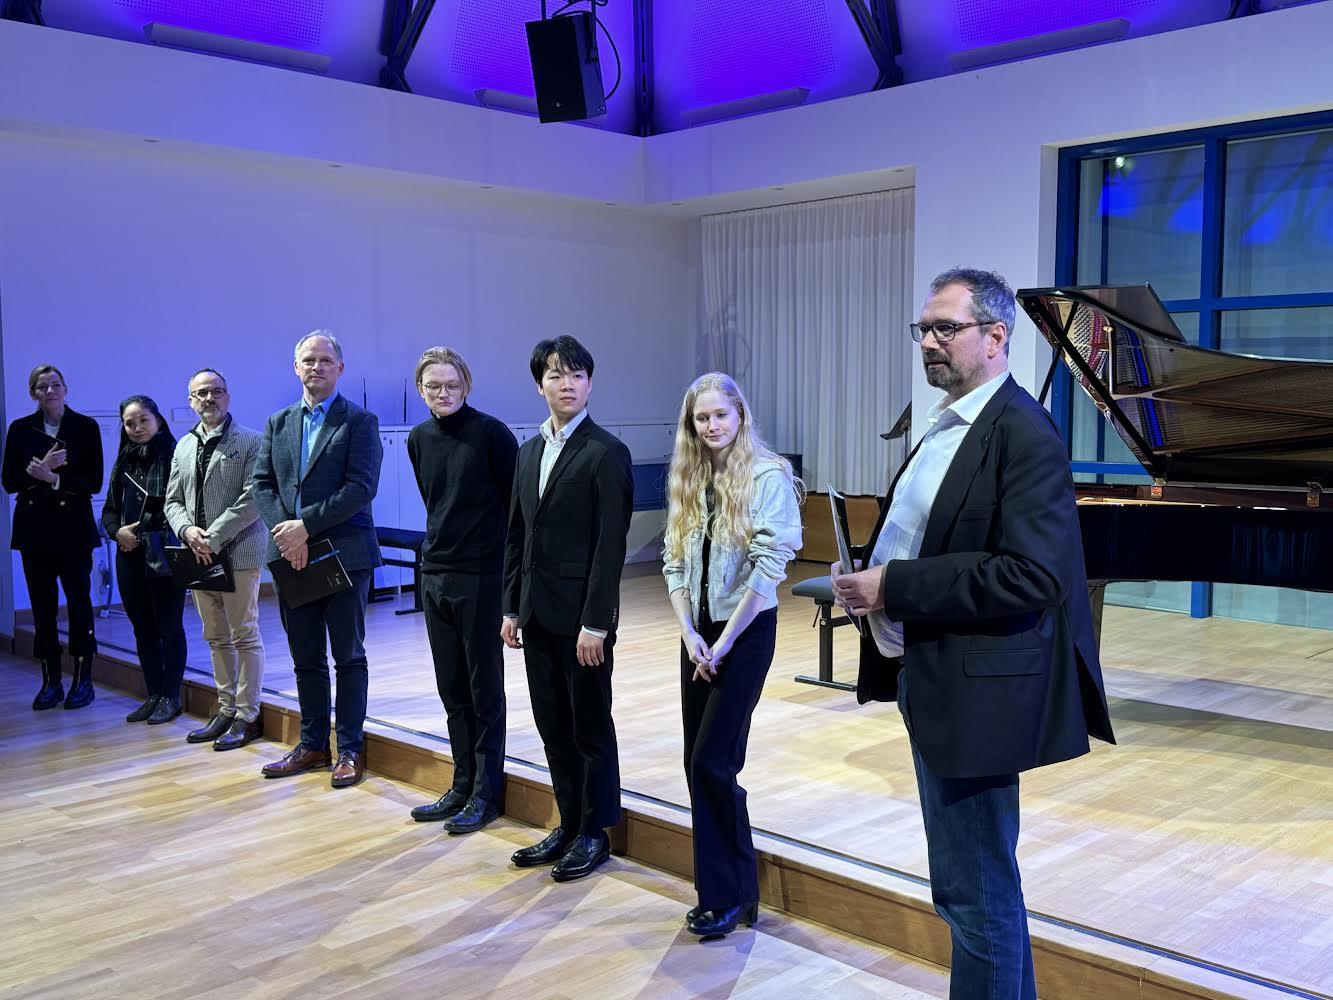 Die Stipendienvergabe beim Finale in Stuttgart: Studierende und Jury-Mitglieder stehen in einer Reihe vor einer kleinen Bühne mit Klavier. Die Personen schauen zu dem Mann ganz rechts, der gerade spricht.